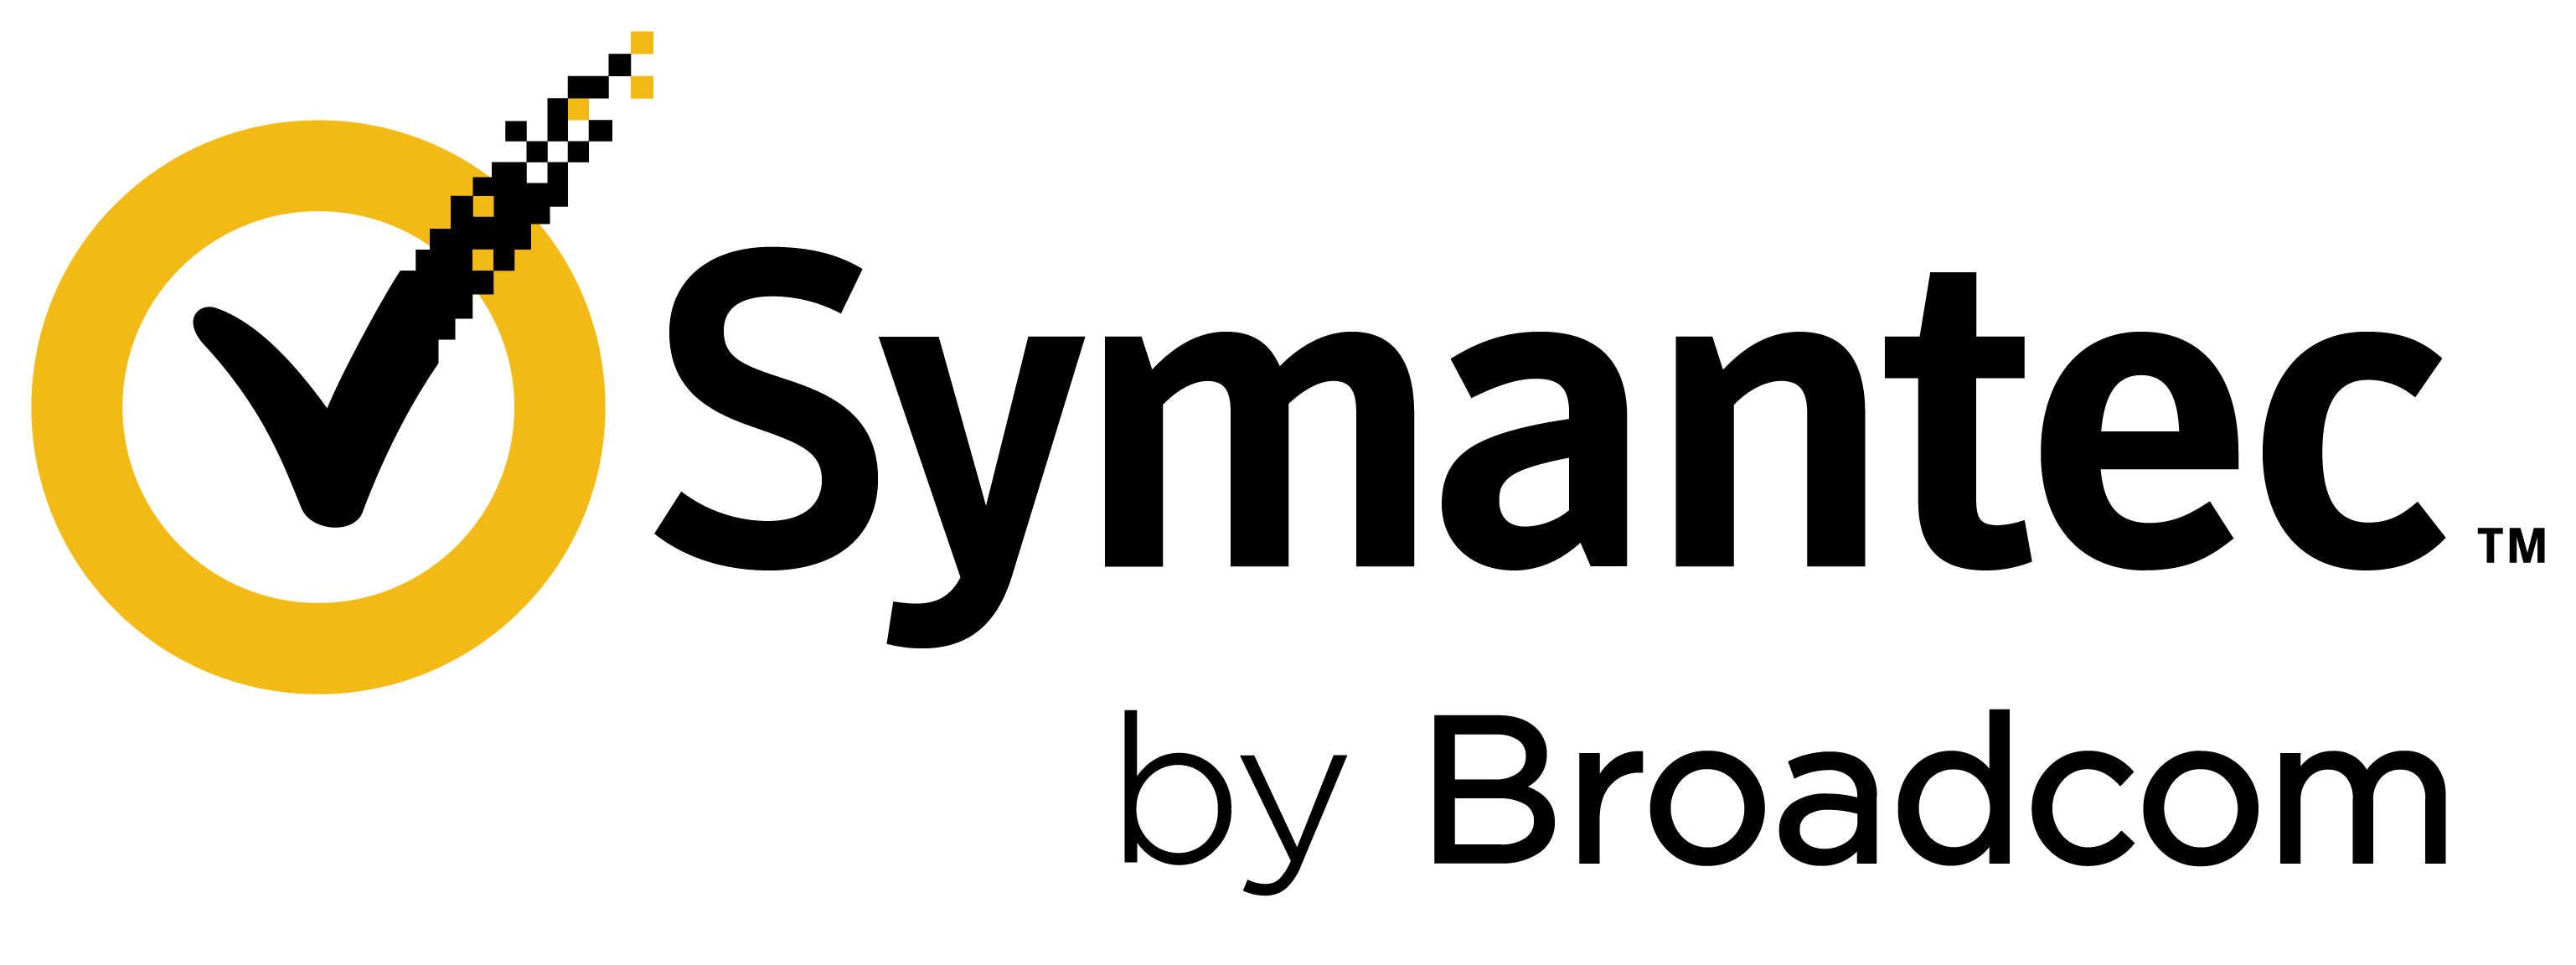 Logo Symantec by Broadcom